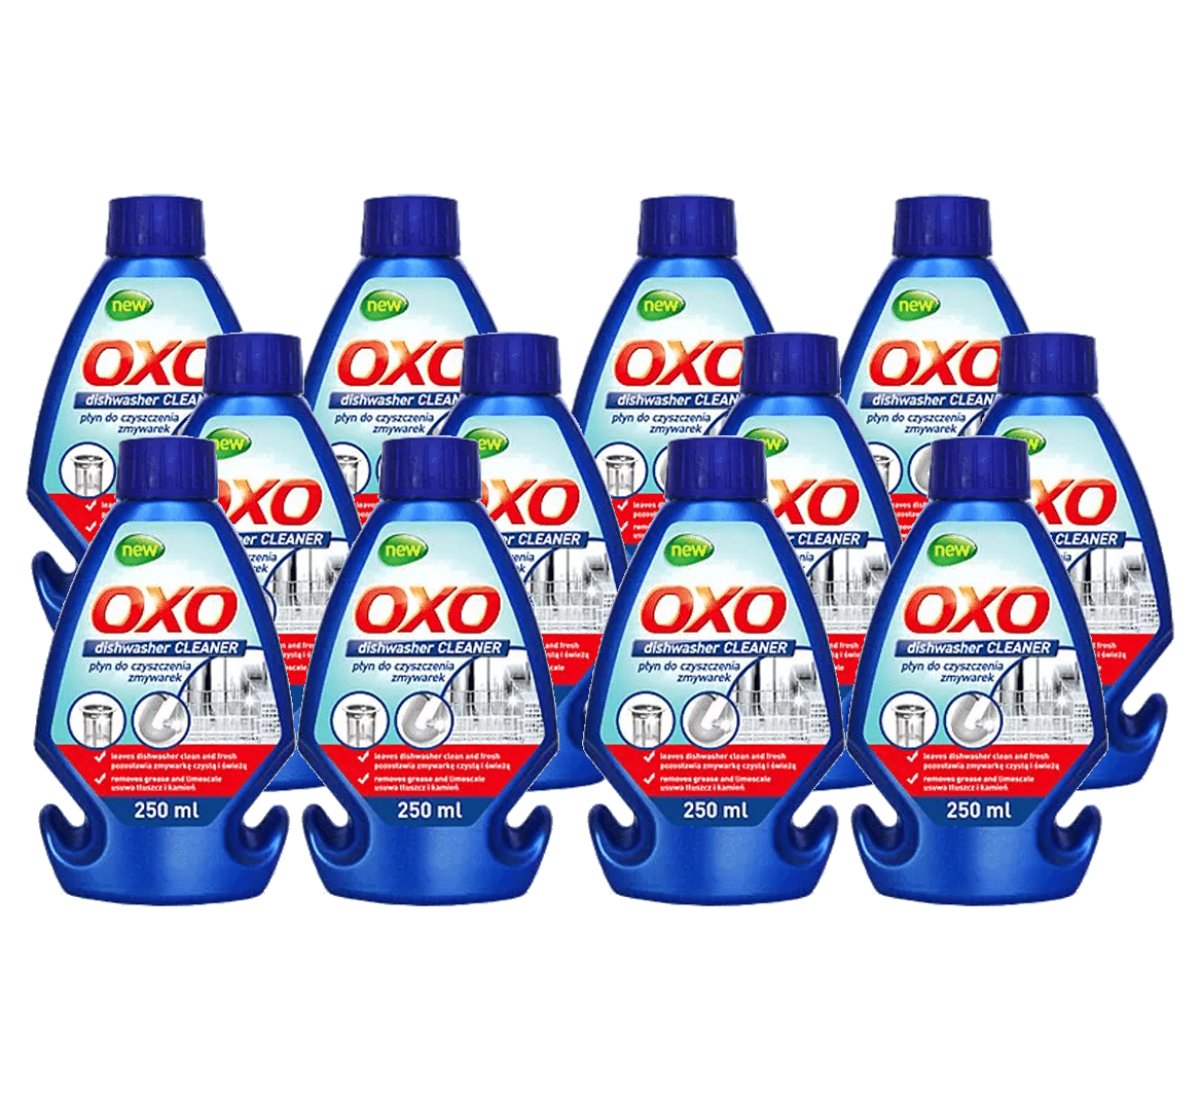 oxo vaatwasserreiniger aanbieding 12 stuks